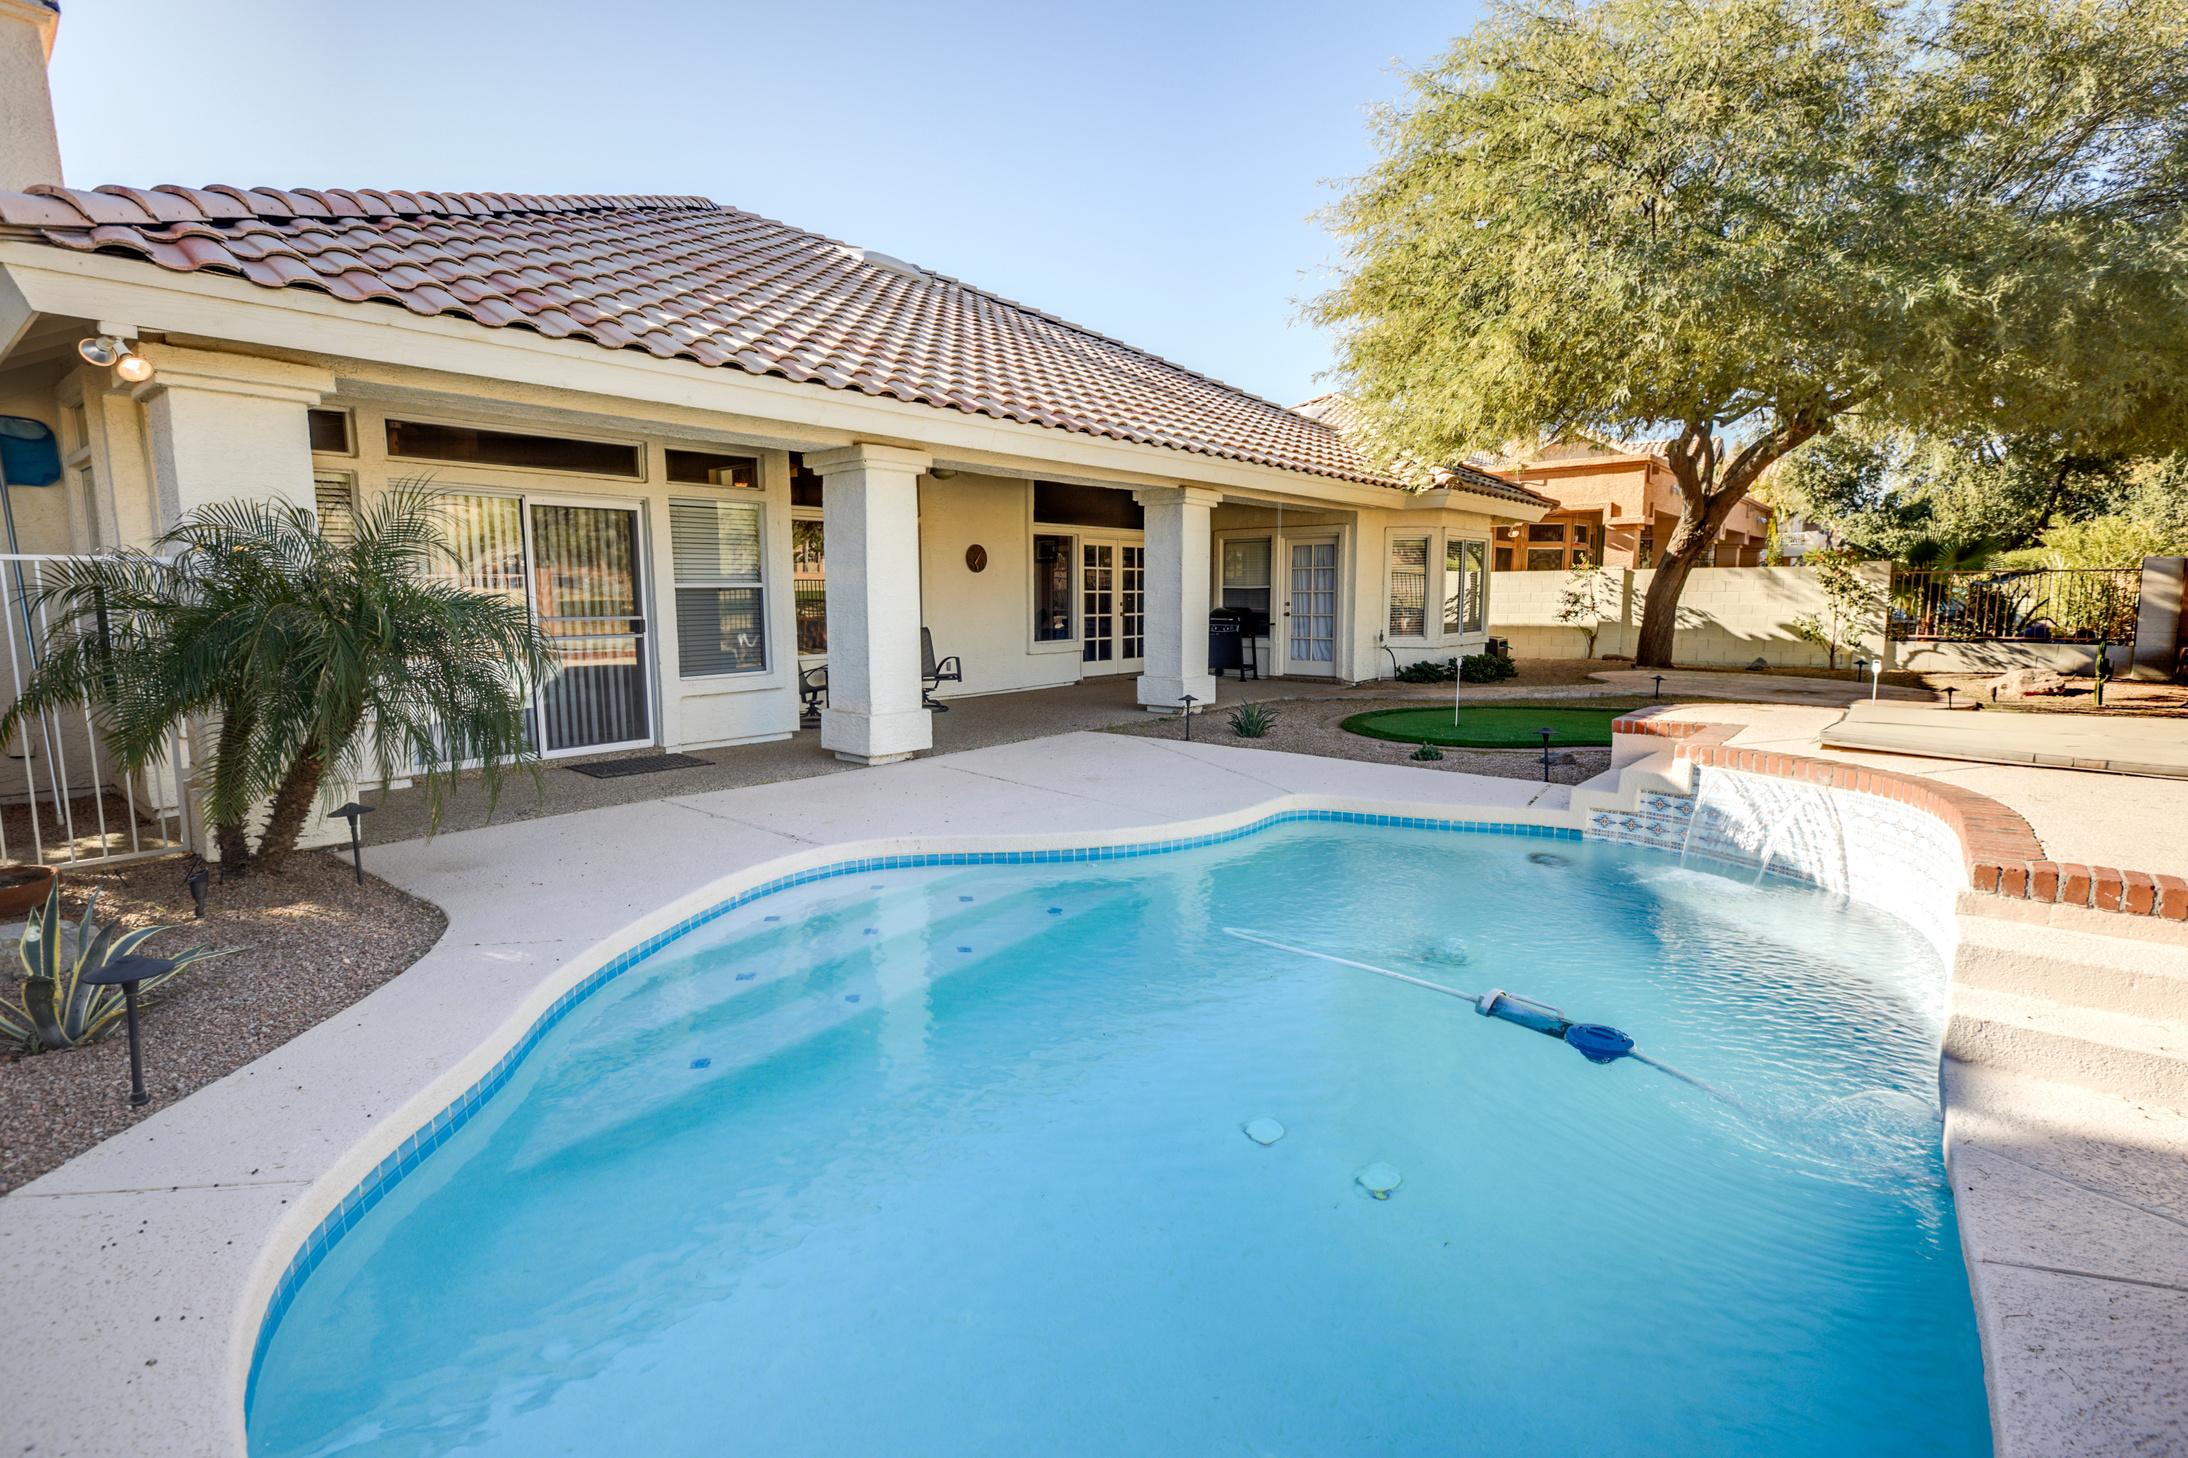 Backyard in Arizona with pool